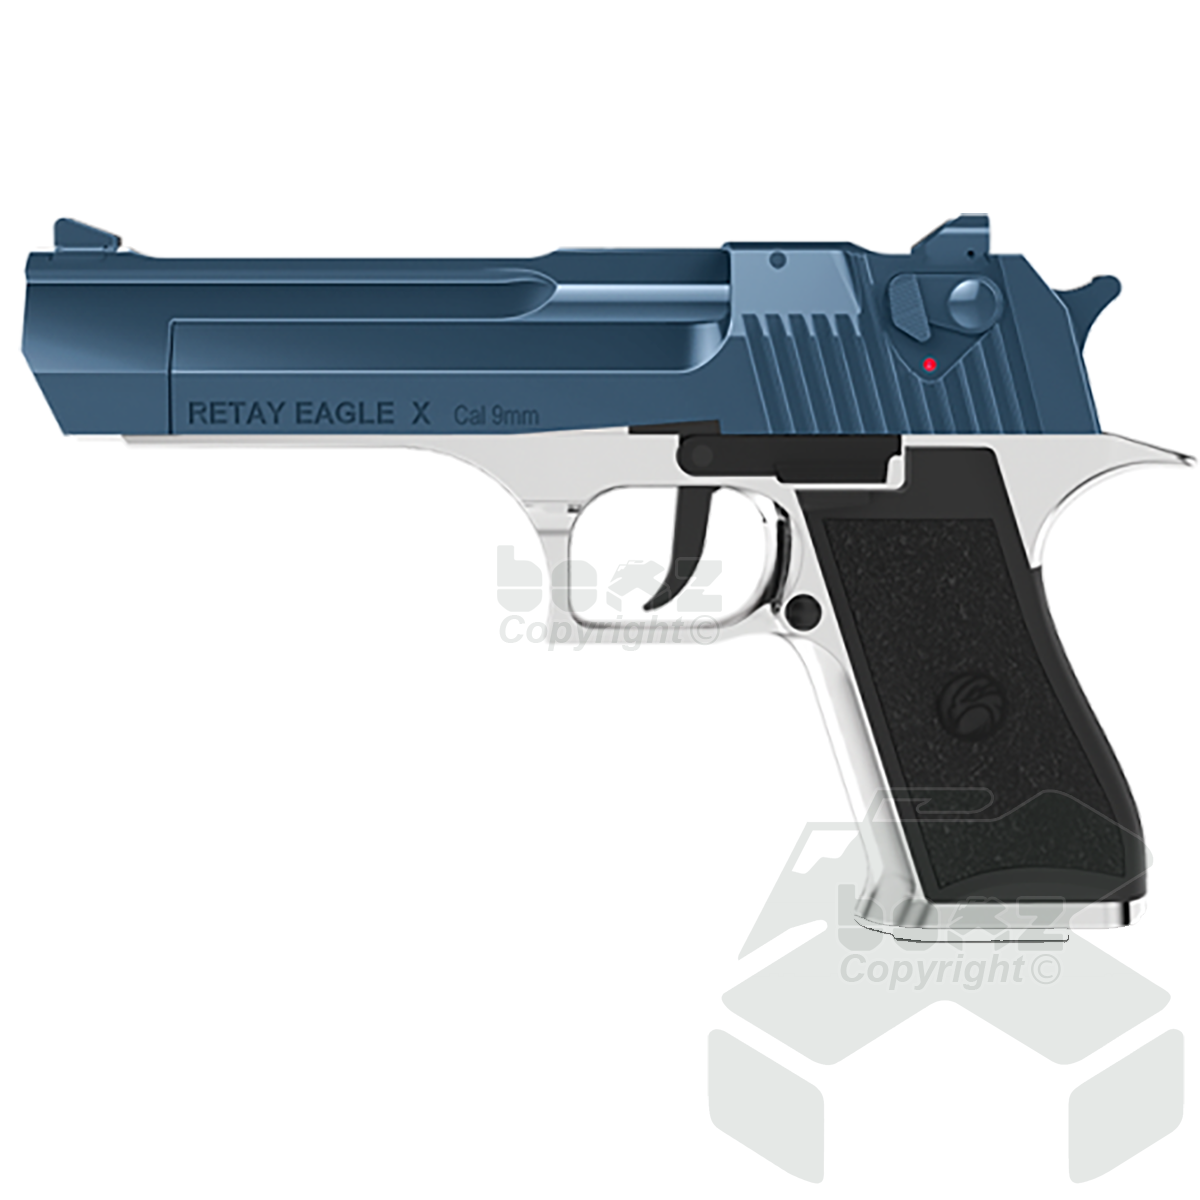 Retay EagleX Blank Firing Pistol - 9mm - Nickel